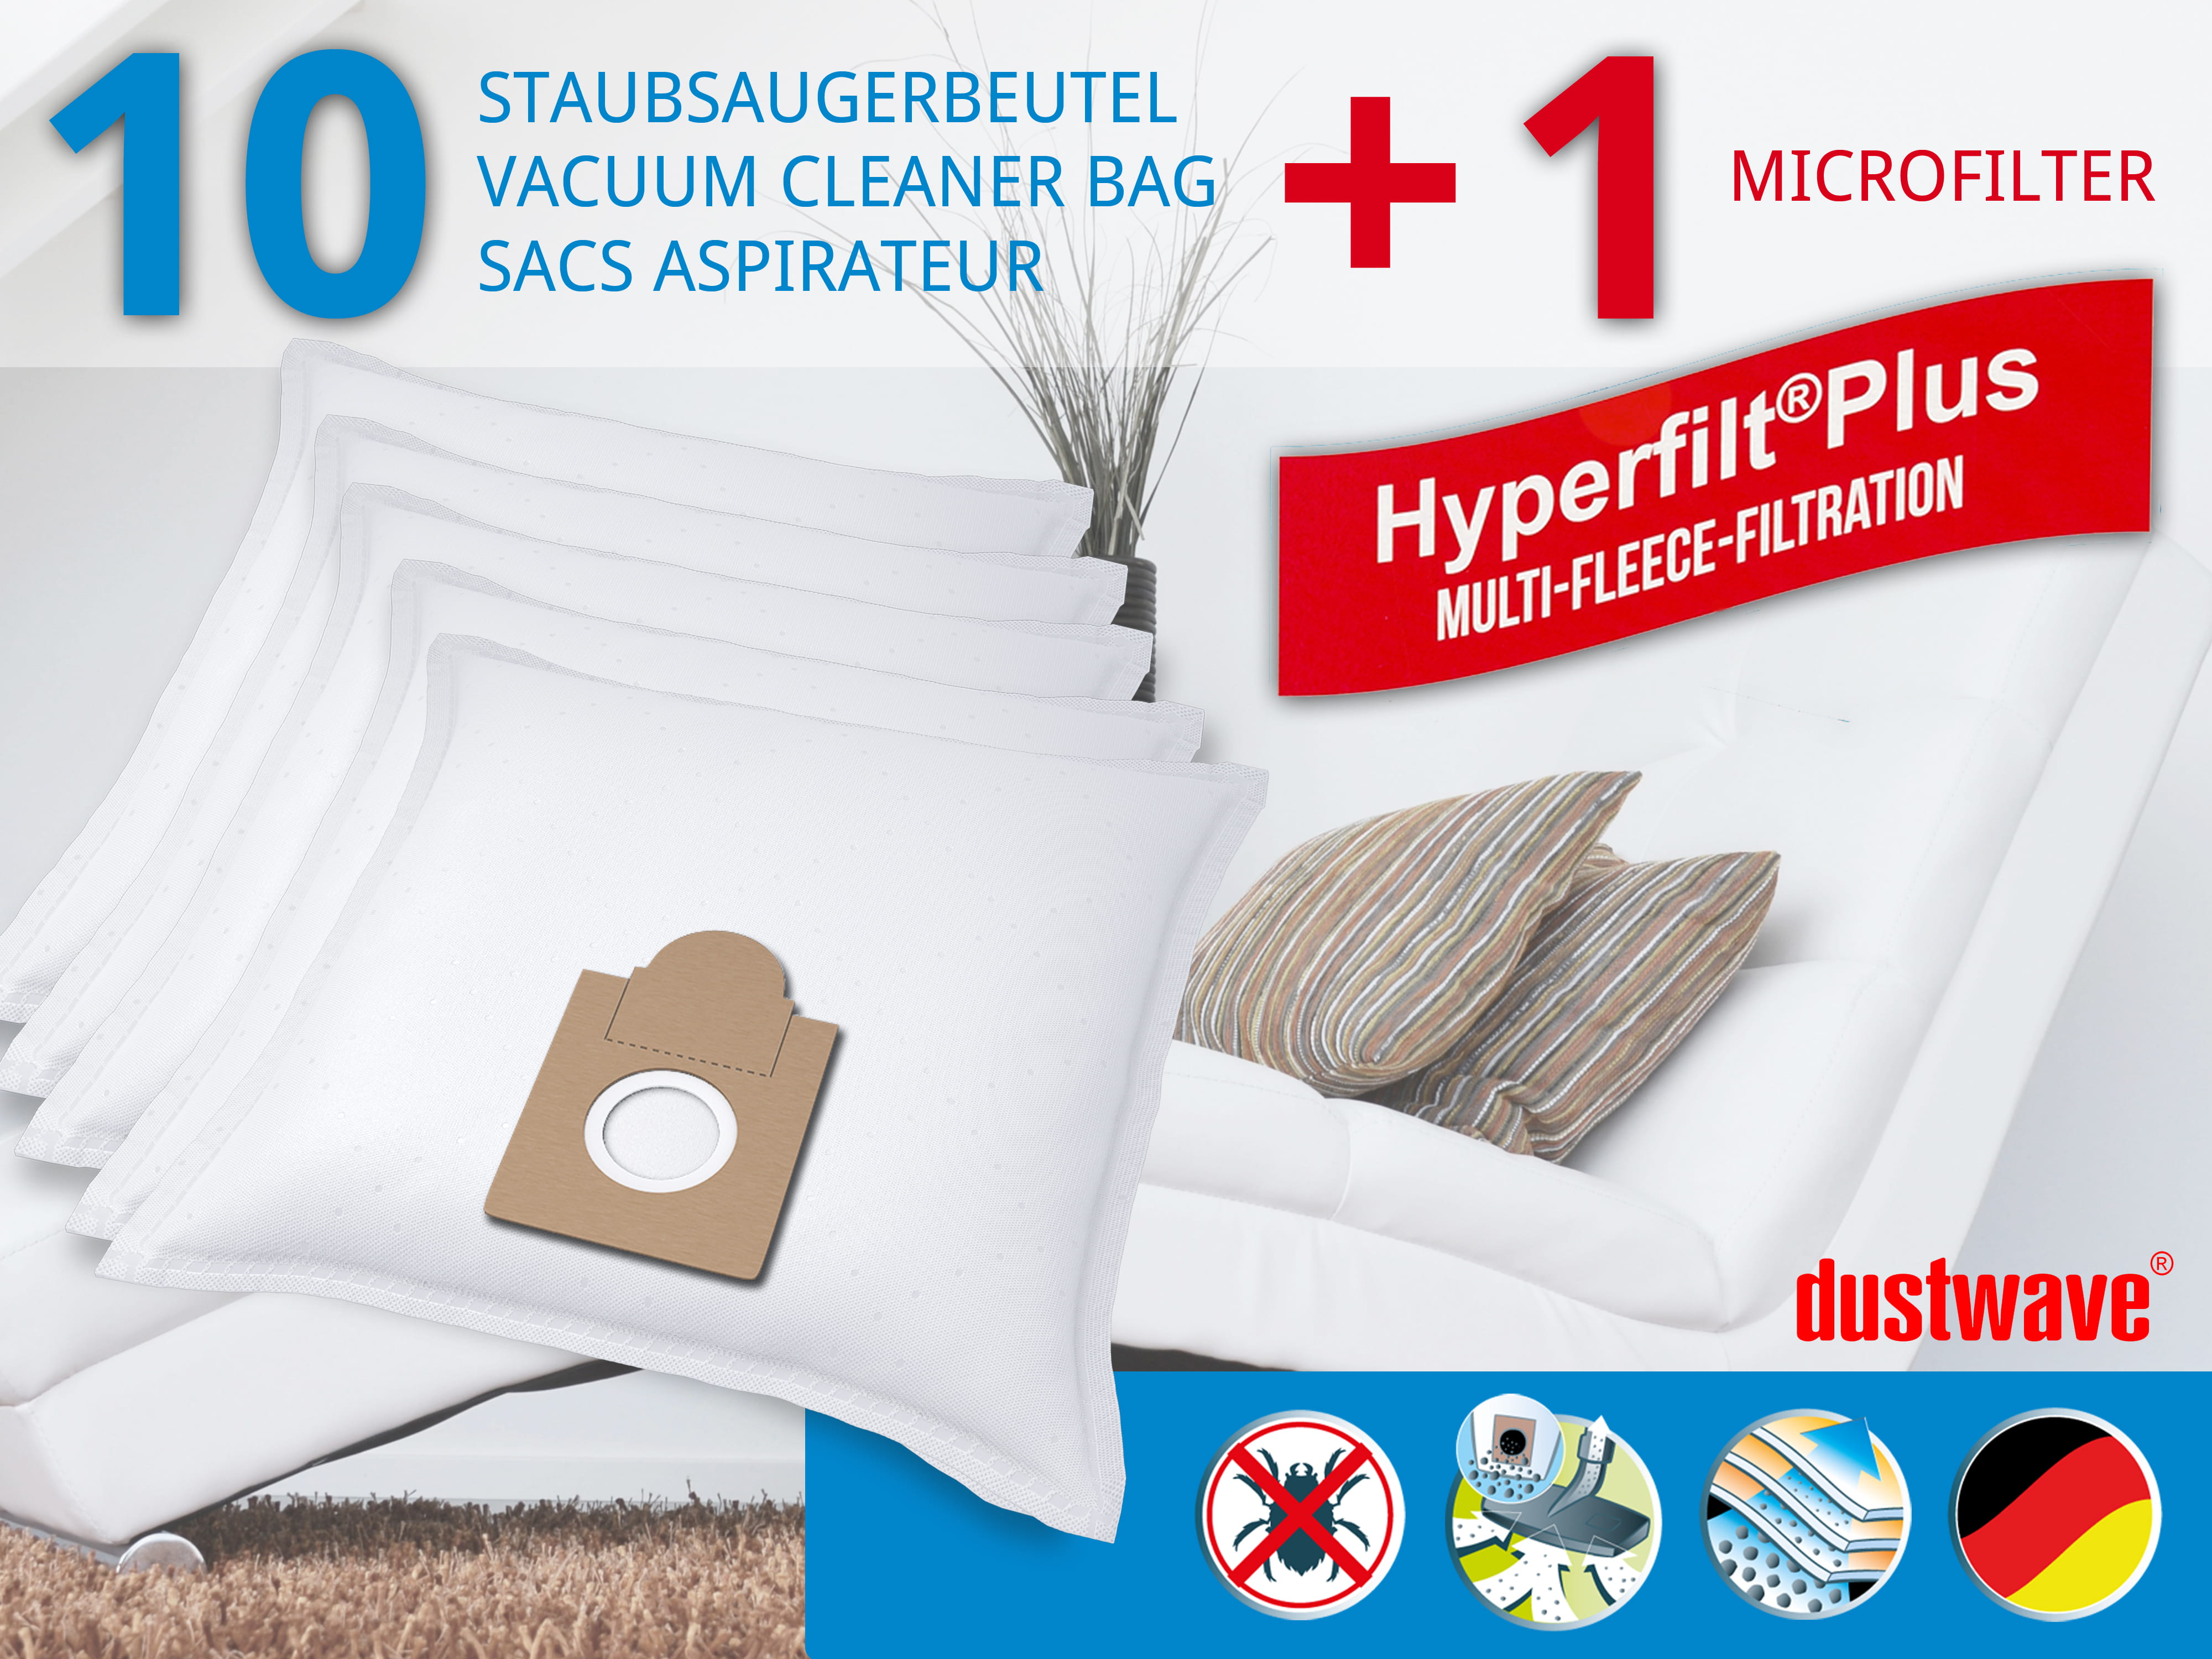 Dustwave® 10 Staubsaugerbeutel für Alaska BS 1600 - hocheffizient mit Hygieneverschluss - Made in Germany